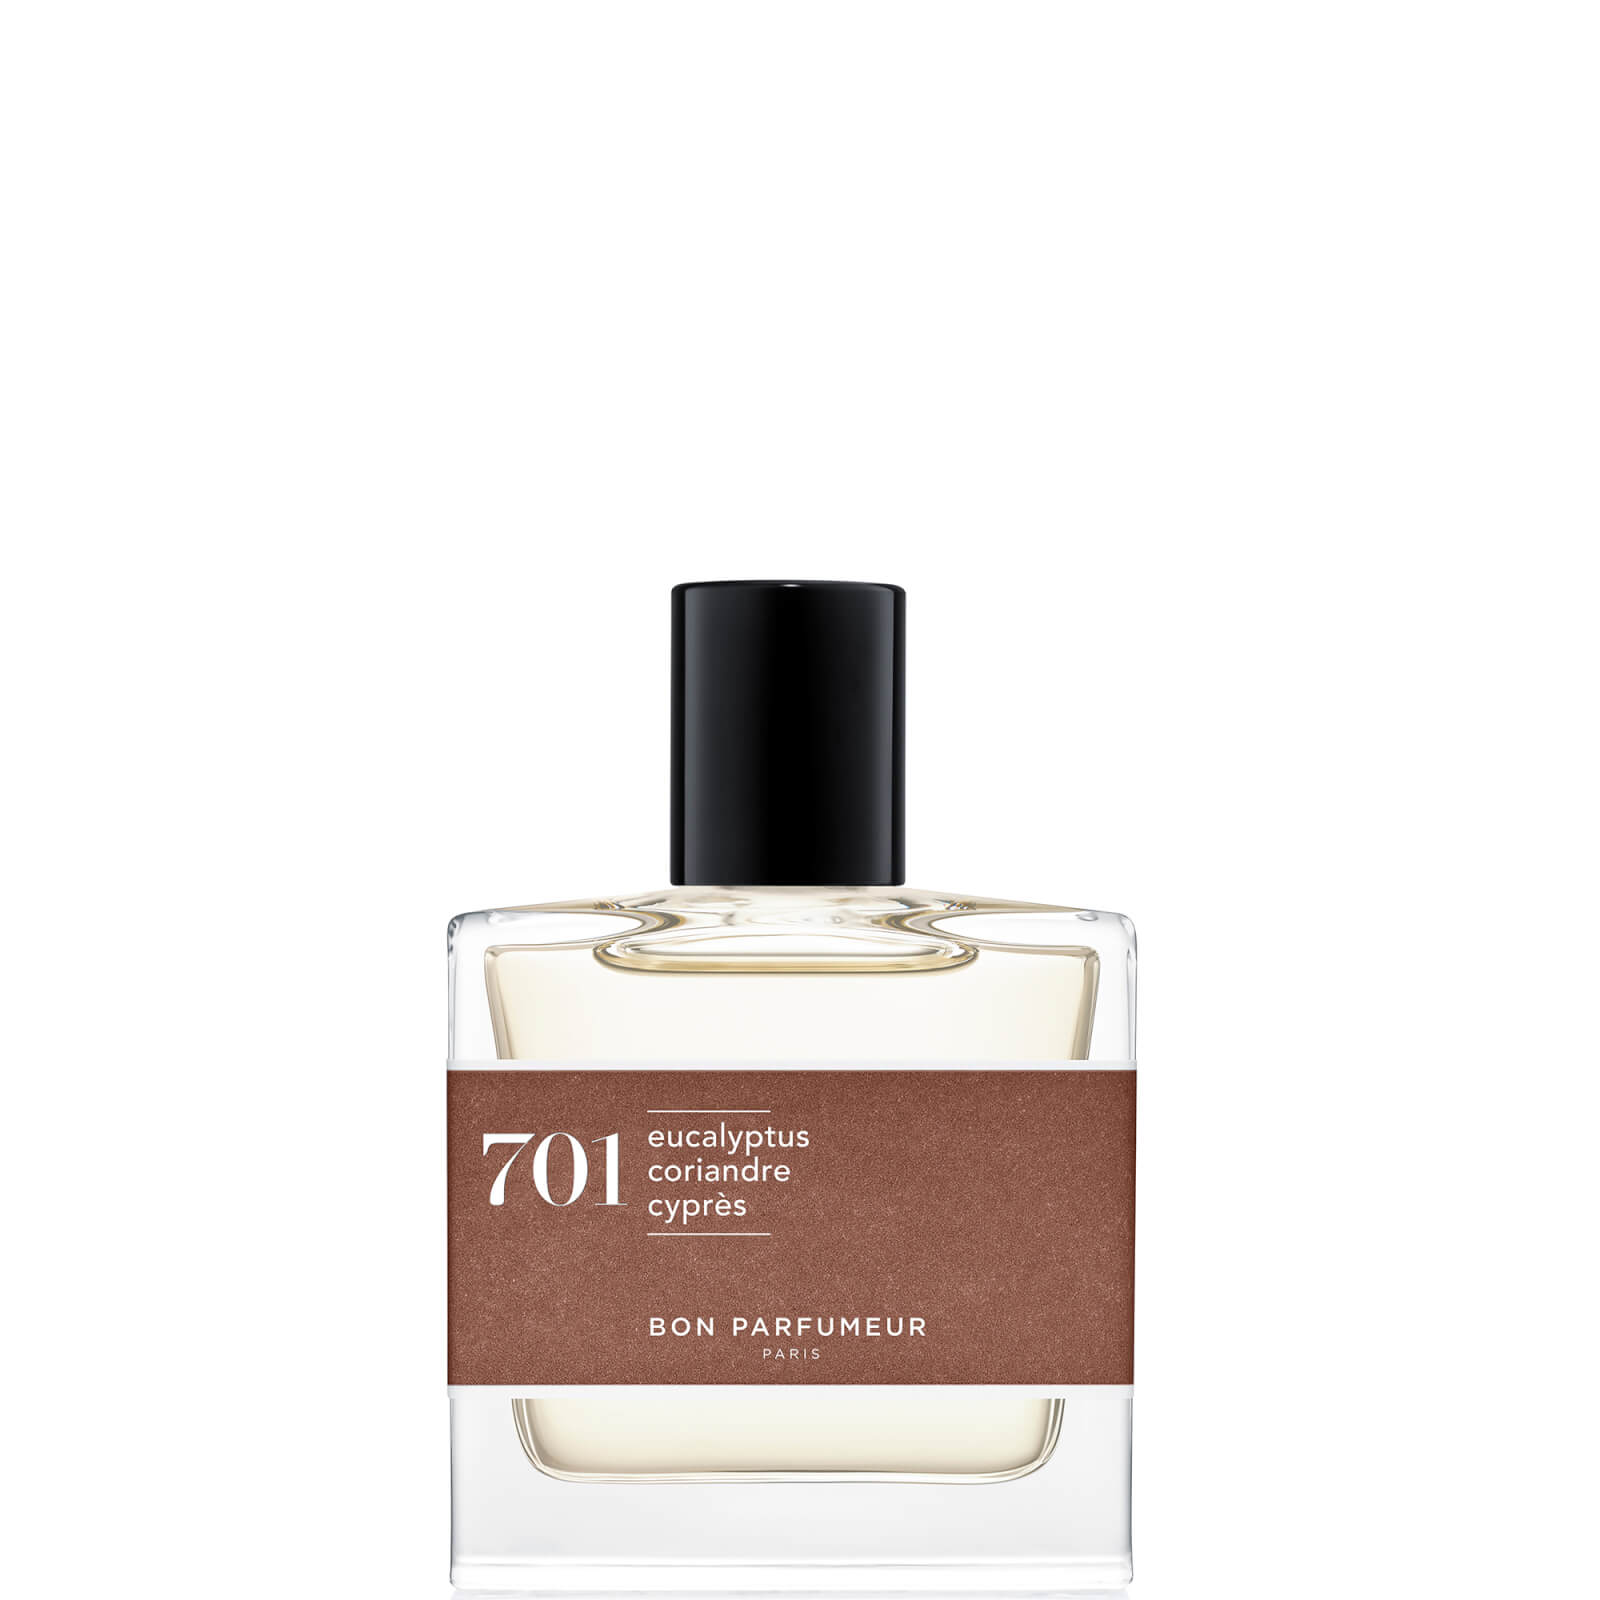 Image of Bon Parfumeur 701 Eucalipto Coriandolo Cypresso Eau de Parfum Profumo - 30ml